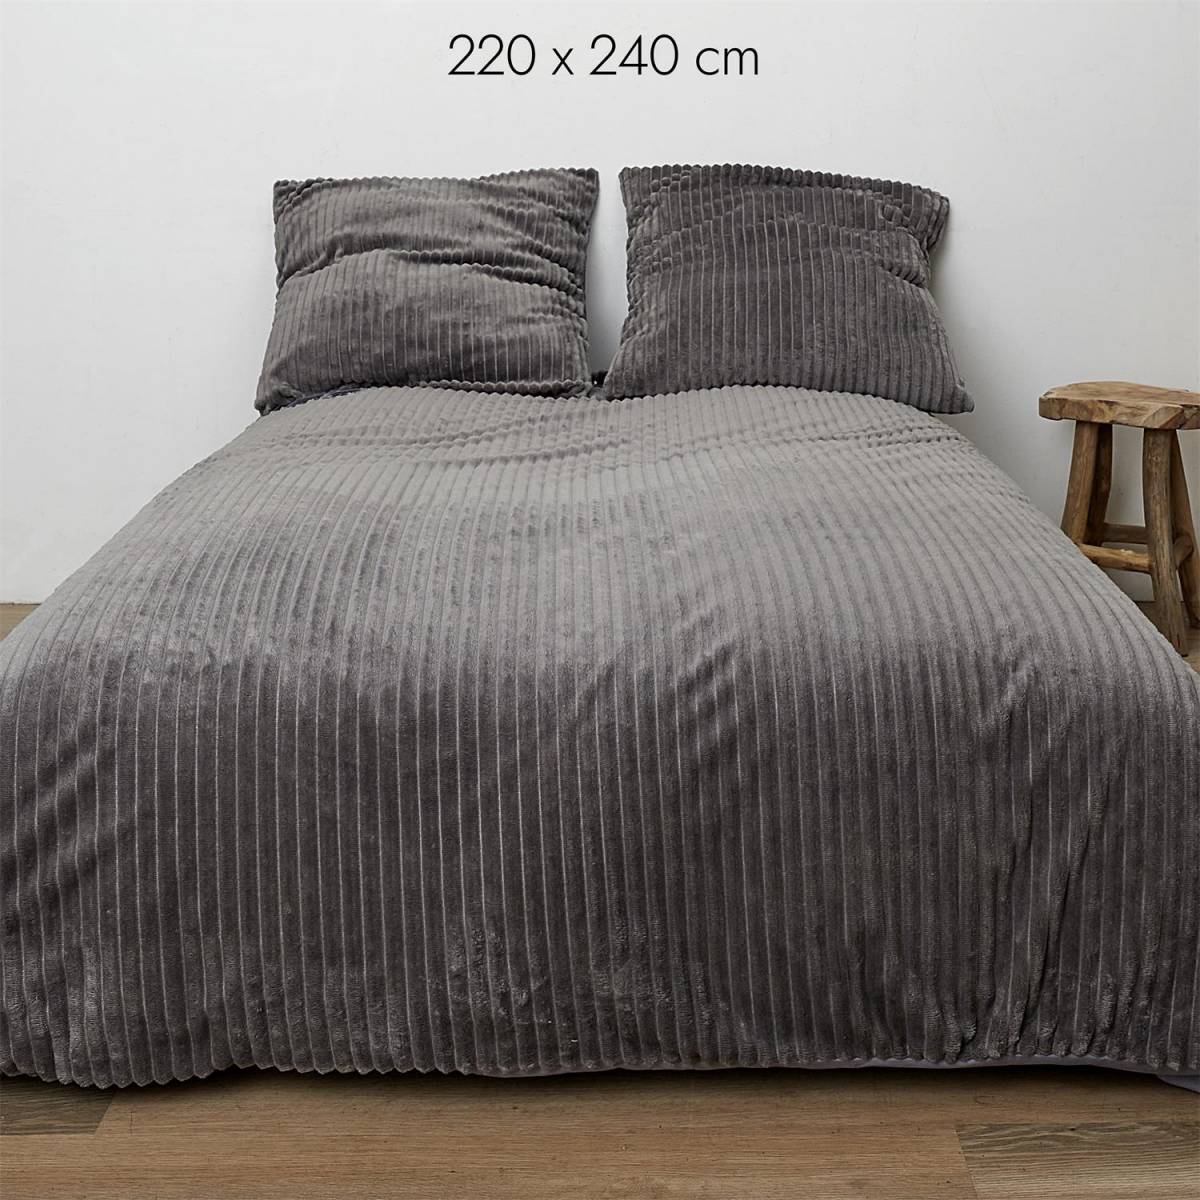 Coppia lenzuola damascata moderna di colore grigio - Malaga